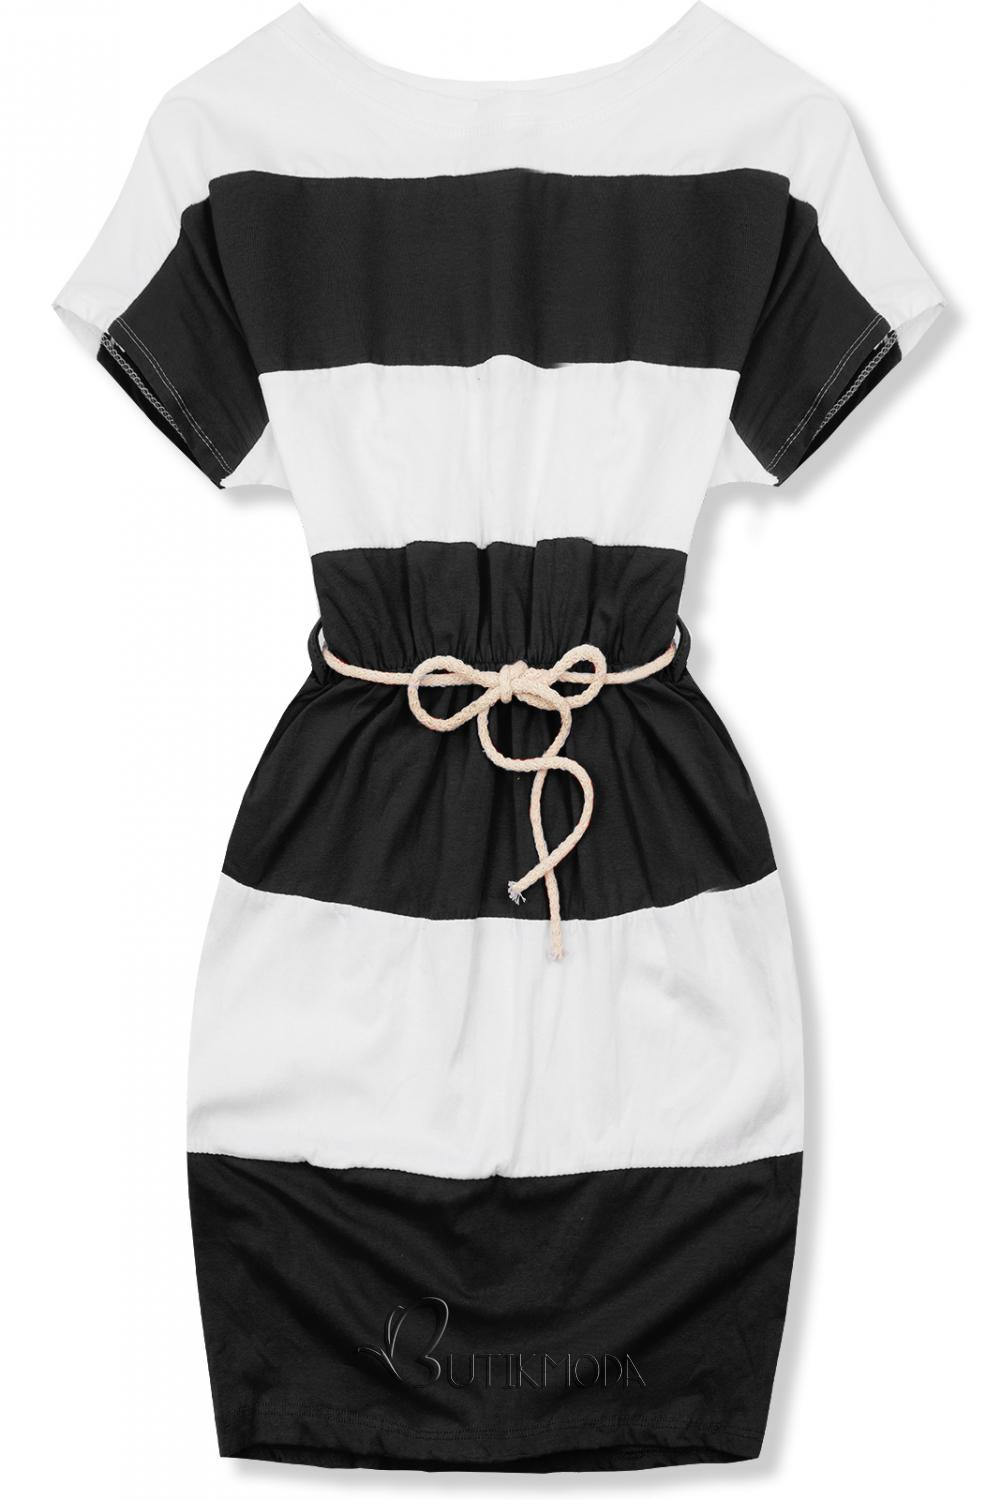 Fekete és fehér színű csíkos ruha